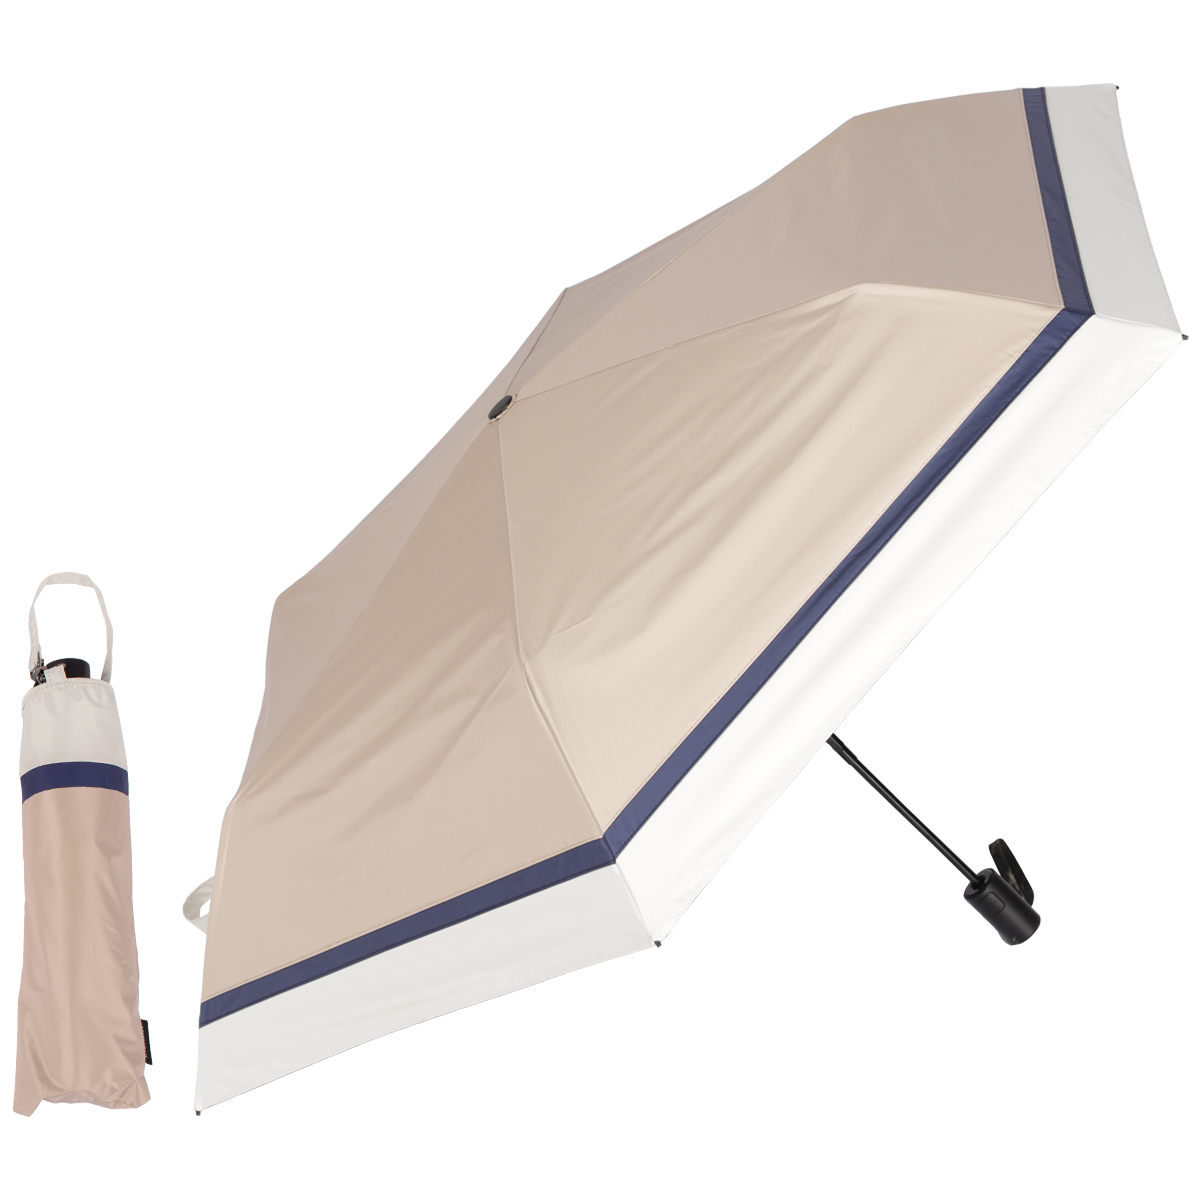 日傘 完全遮光 折りたたみ傘 自動開閉 超軽量カーボン傘 234g uvカット 100 遮光 大きい...